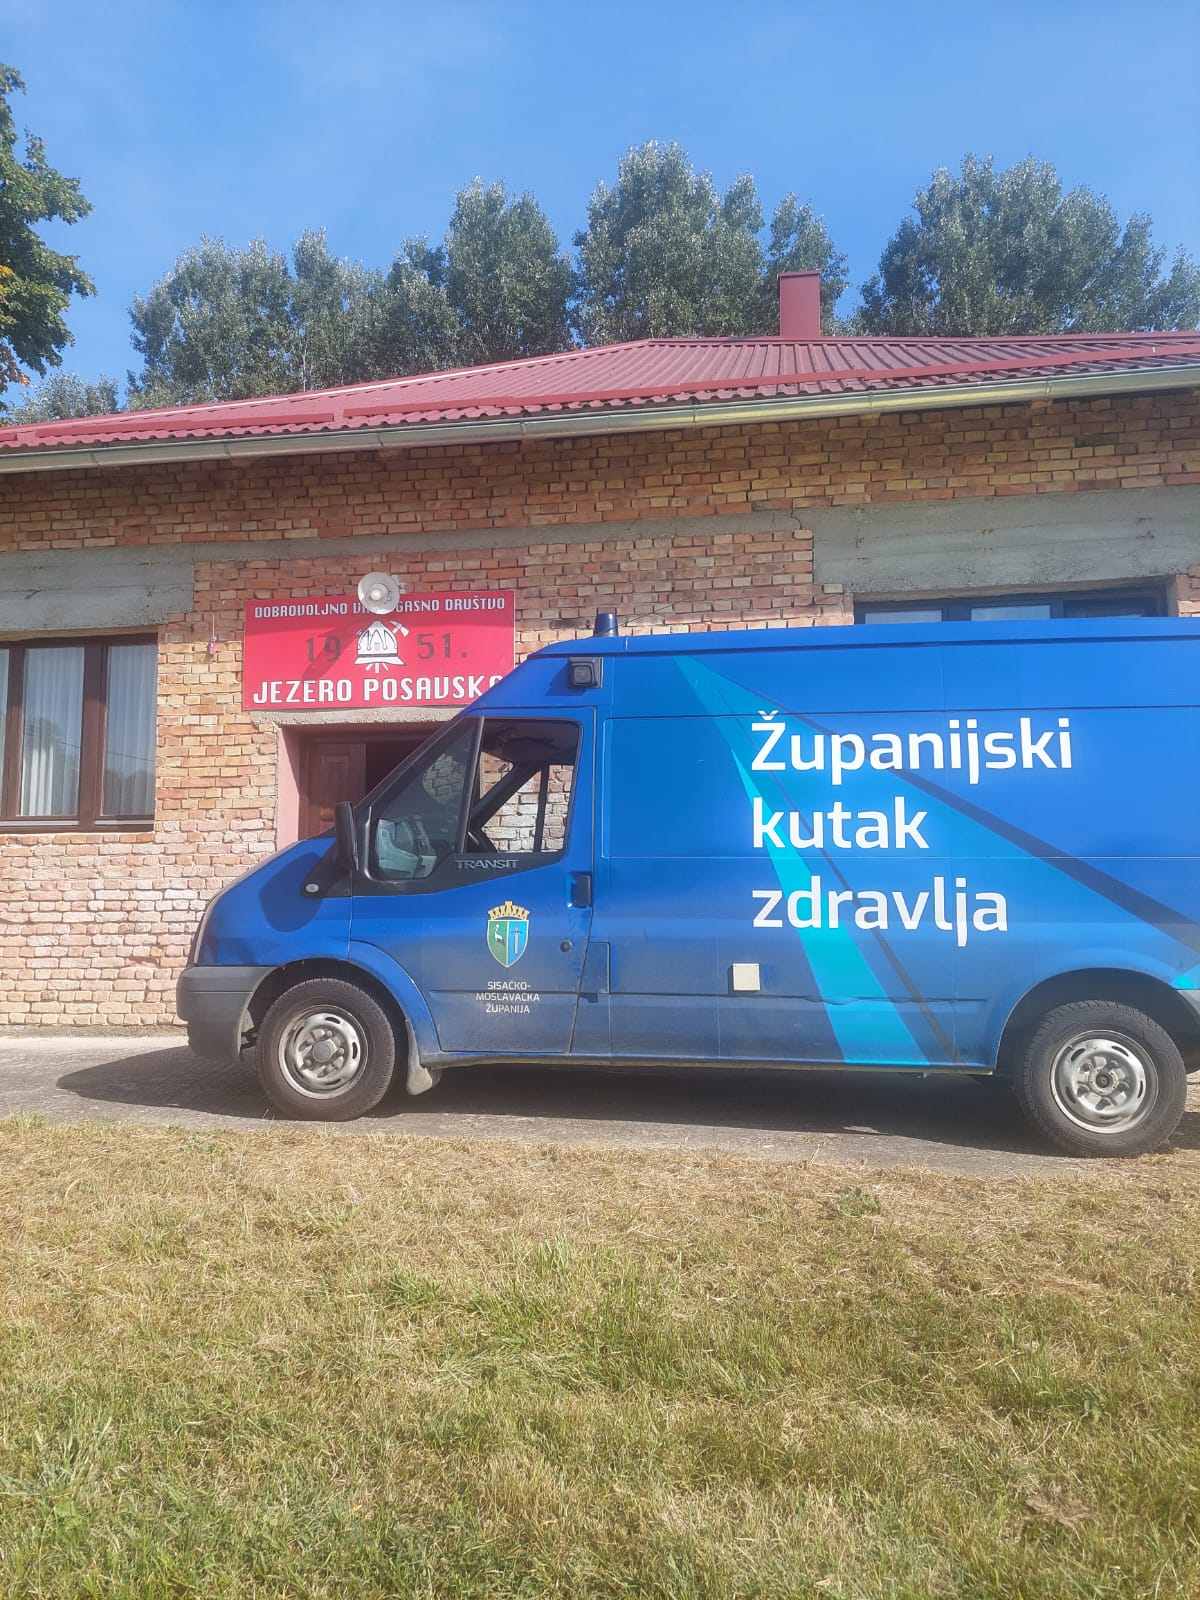 Projekt „Županijski kutak zdravlja“ provodi se kroz 3 faze od kojih svaka traje 4 mjeseca s ciljem povećanja zdravstvene zaštite stanovnika u ruralnim područjima Sisačko-moslavačke županije.